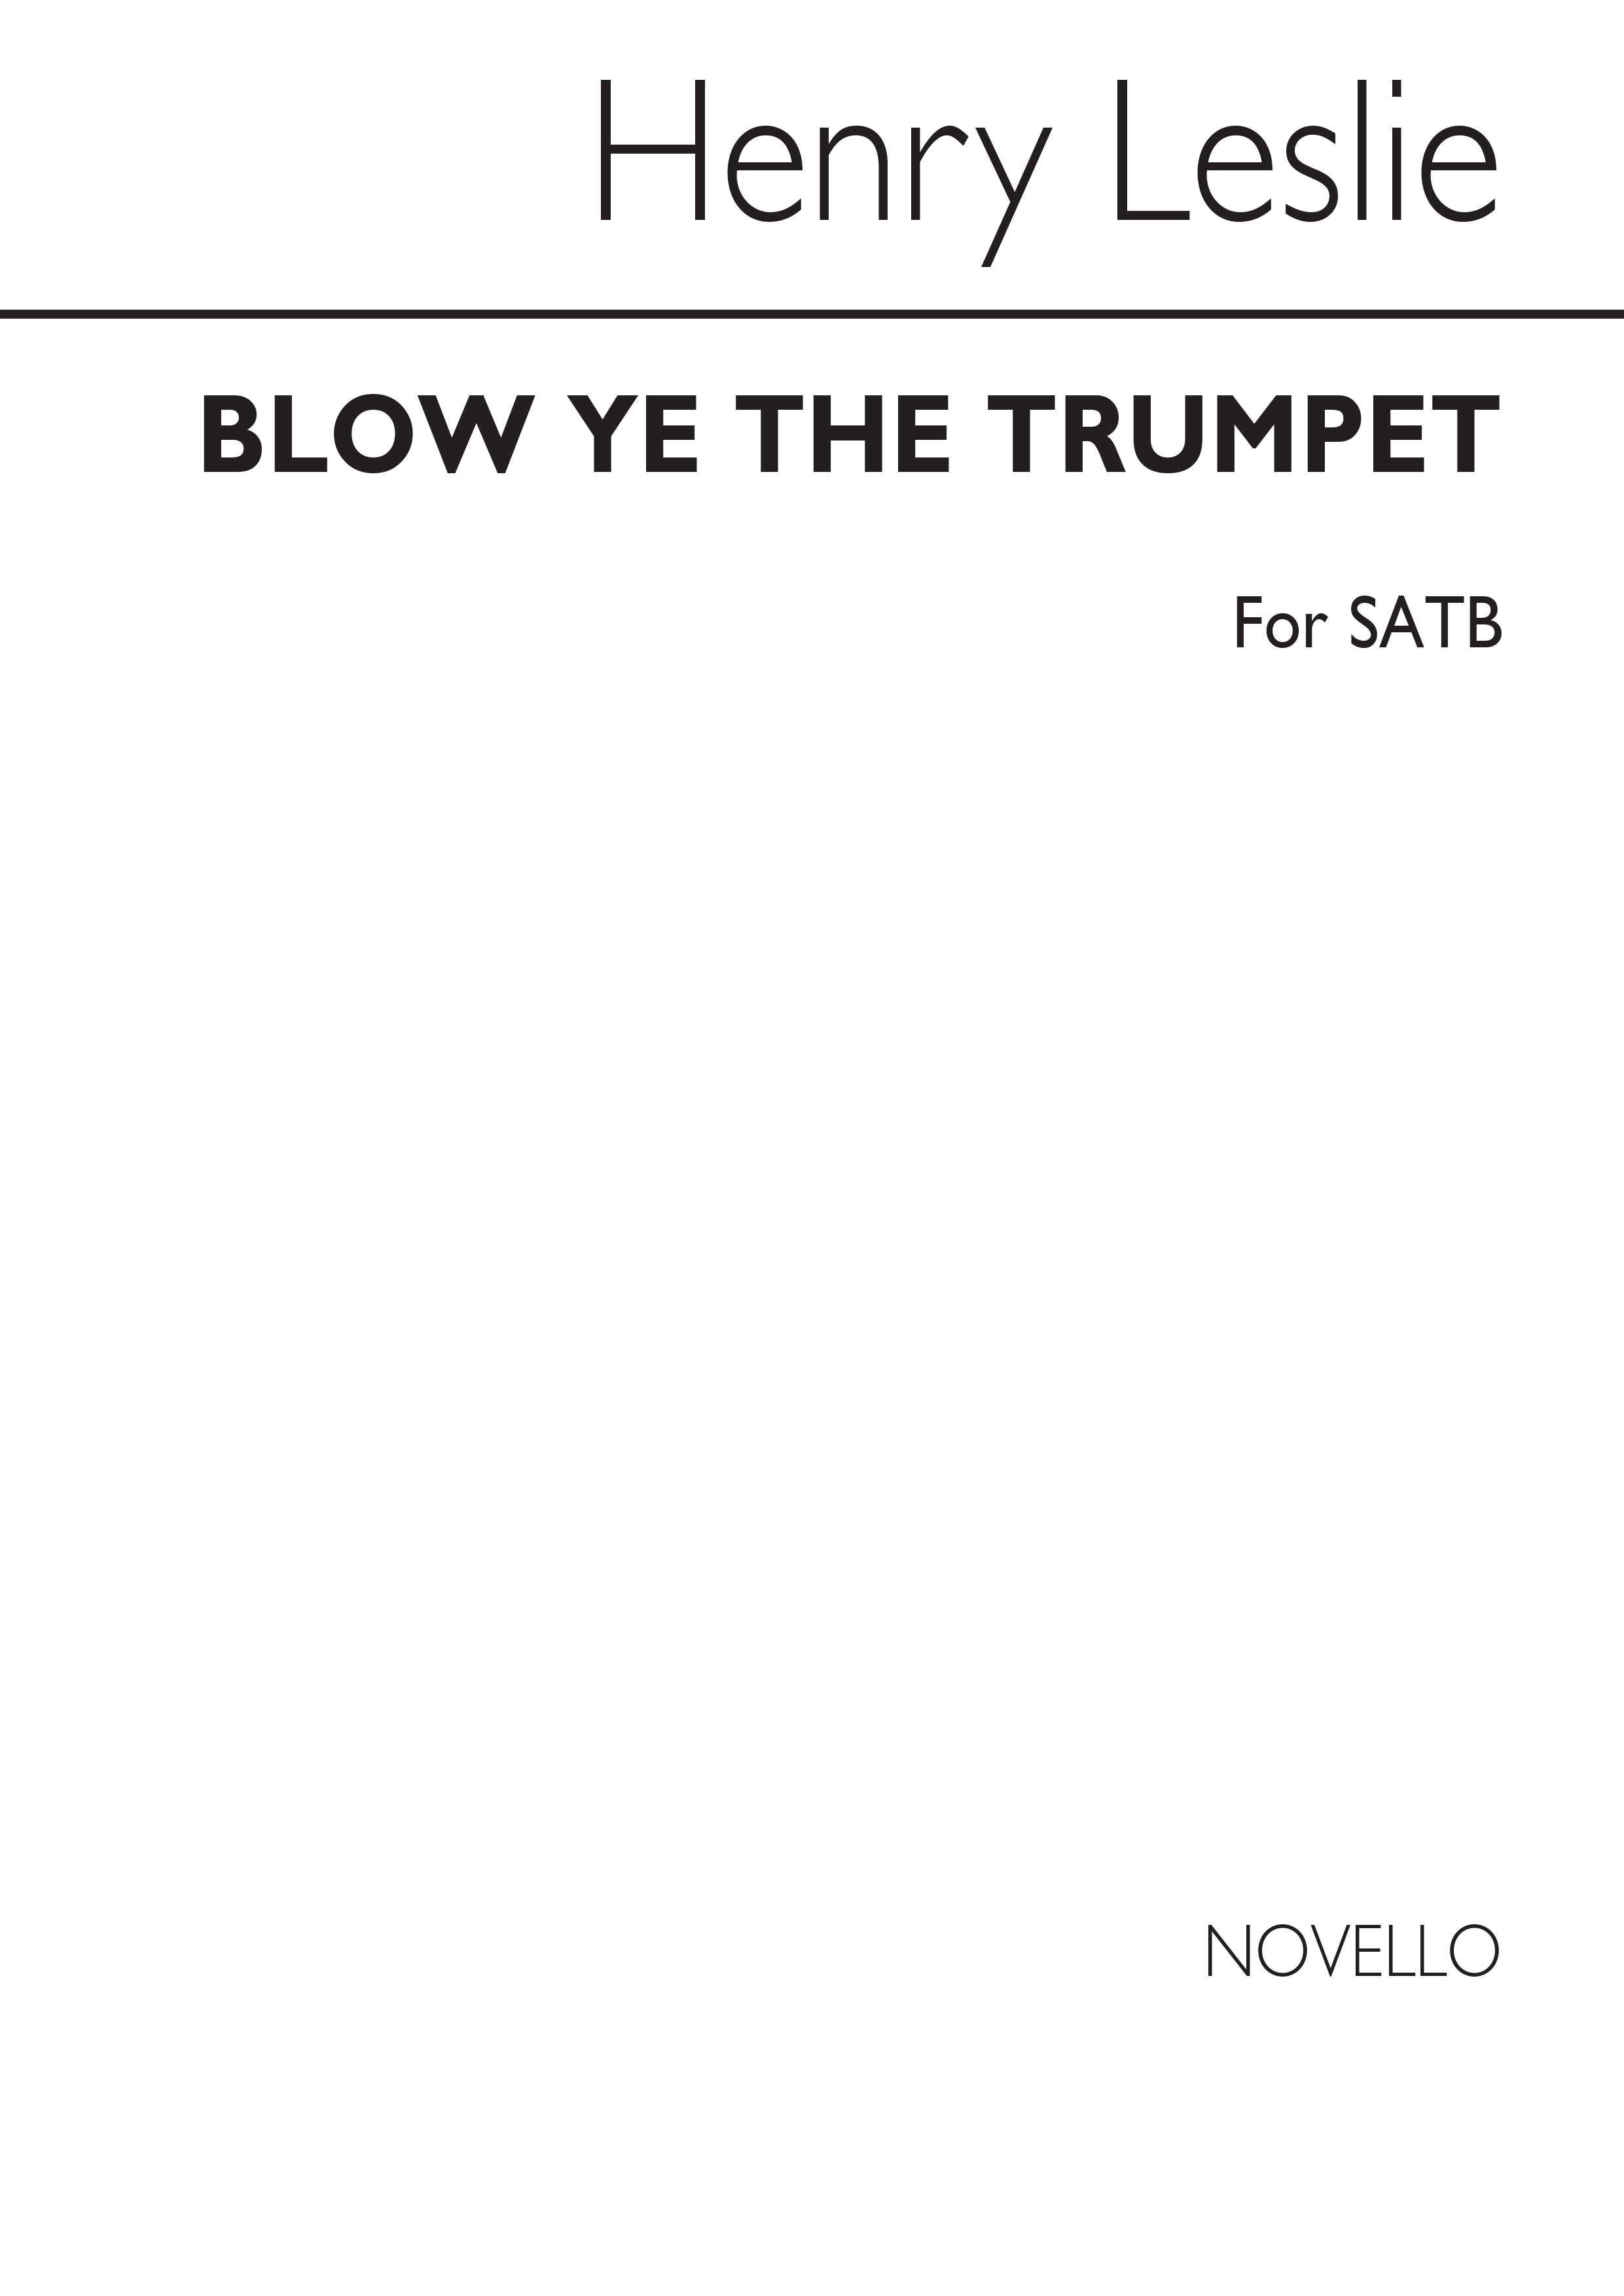 H. Leslie: Leslie Blow Ye The Trumpet Satb: SATB: Vocal Score